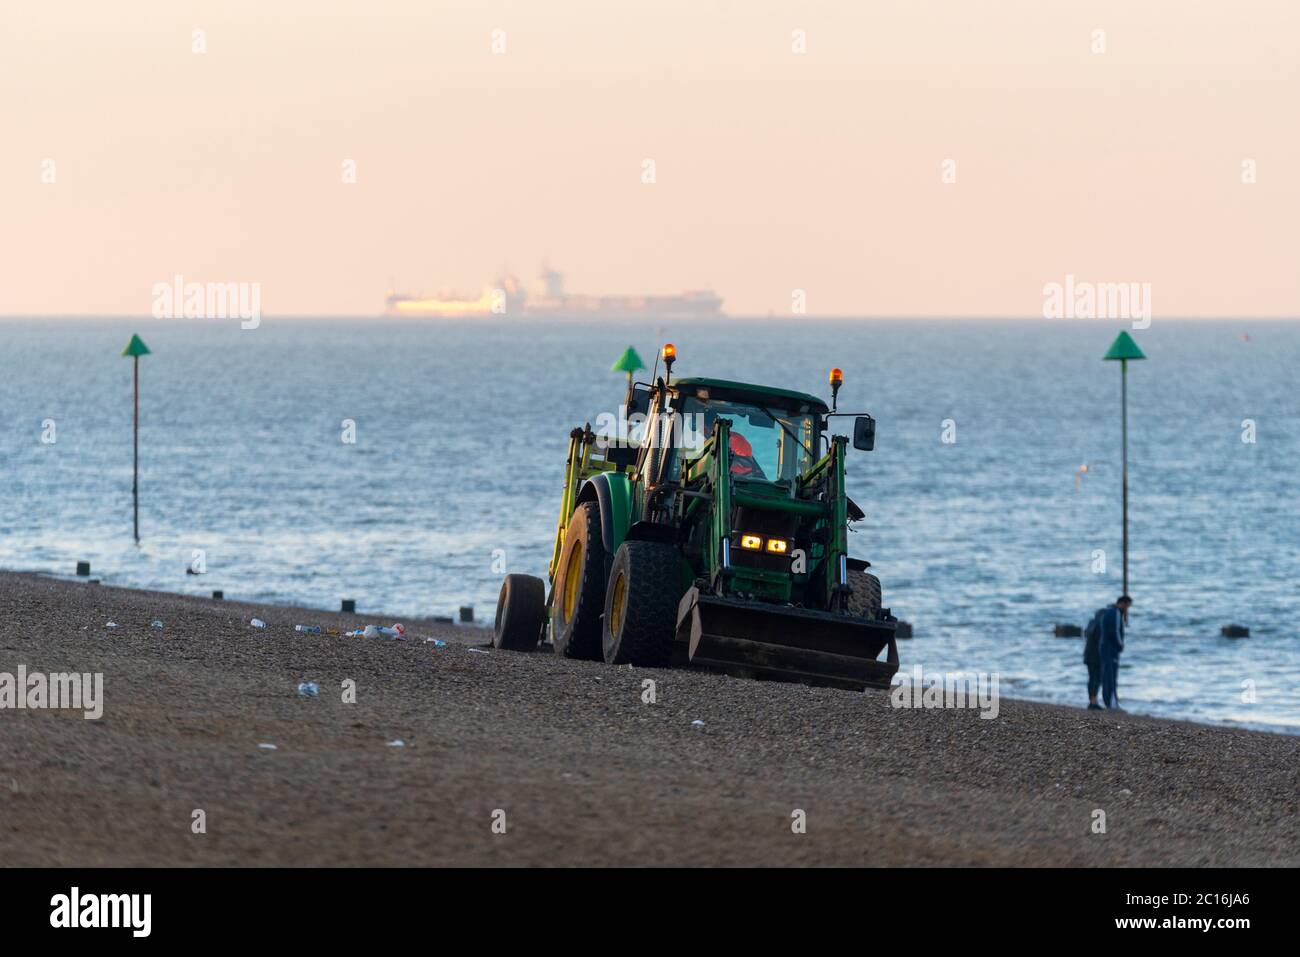 Nettoyage de tracteurs Jubilee Beach sur l'estuaire de la Tamise à Southend on Sea, Essex, Royaume-Uni. Tamise. Nettoyage des déchets tôt le matin. Plastique Banque D'Images